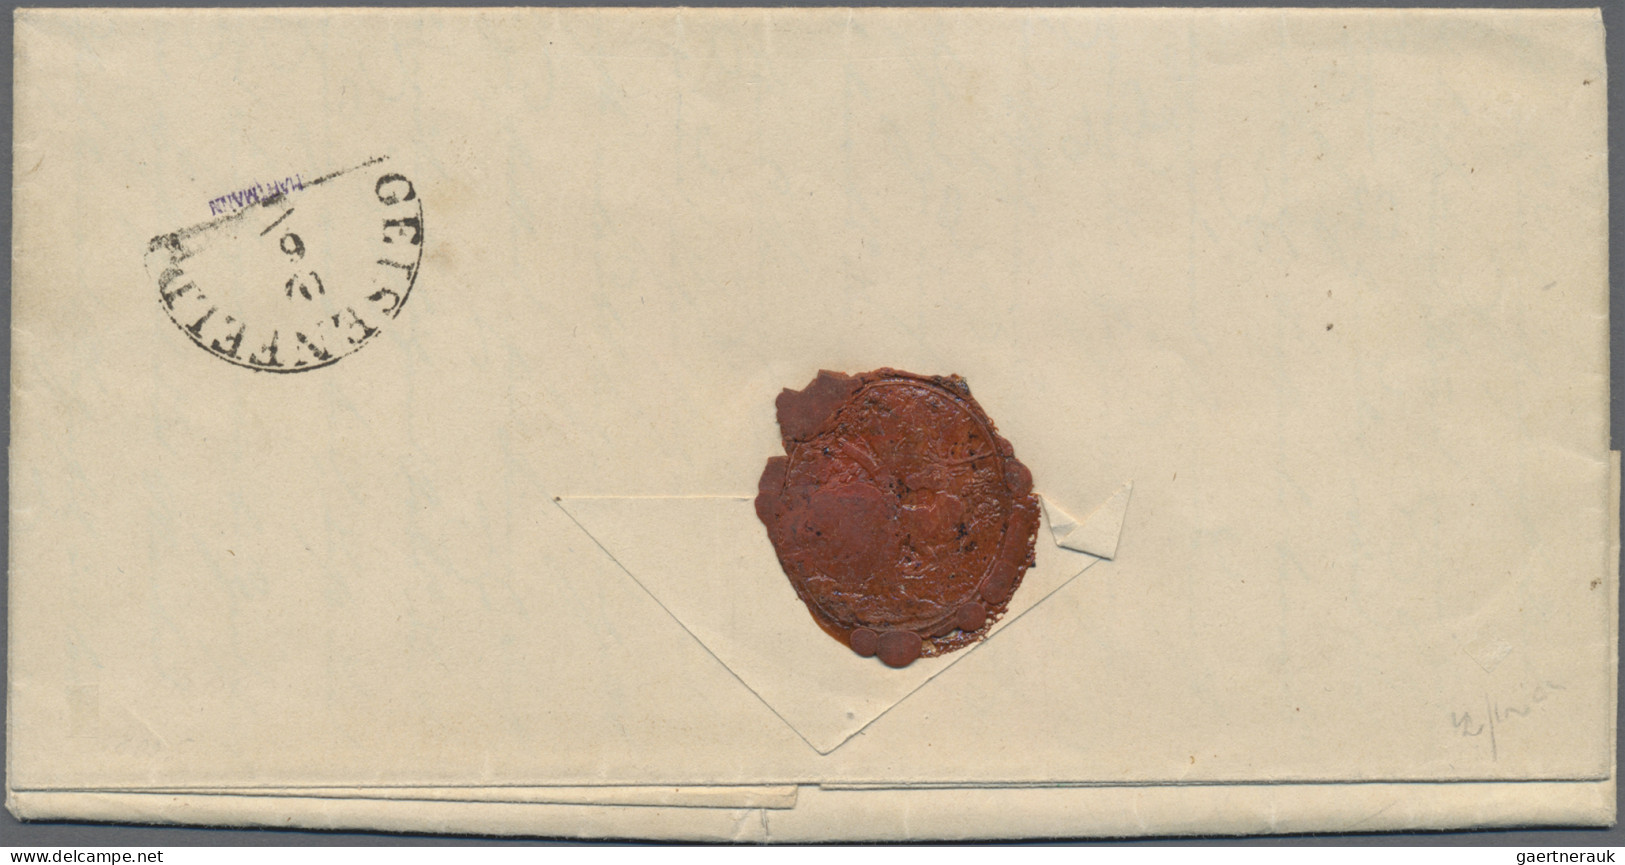 Bayern - Marken Und Briefe: 1850, 6 Kr. Braun, Typ II, Platte 1, Entwertet Mit G - Otros & Sin Clasificación